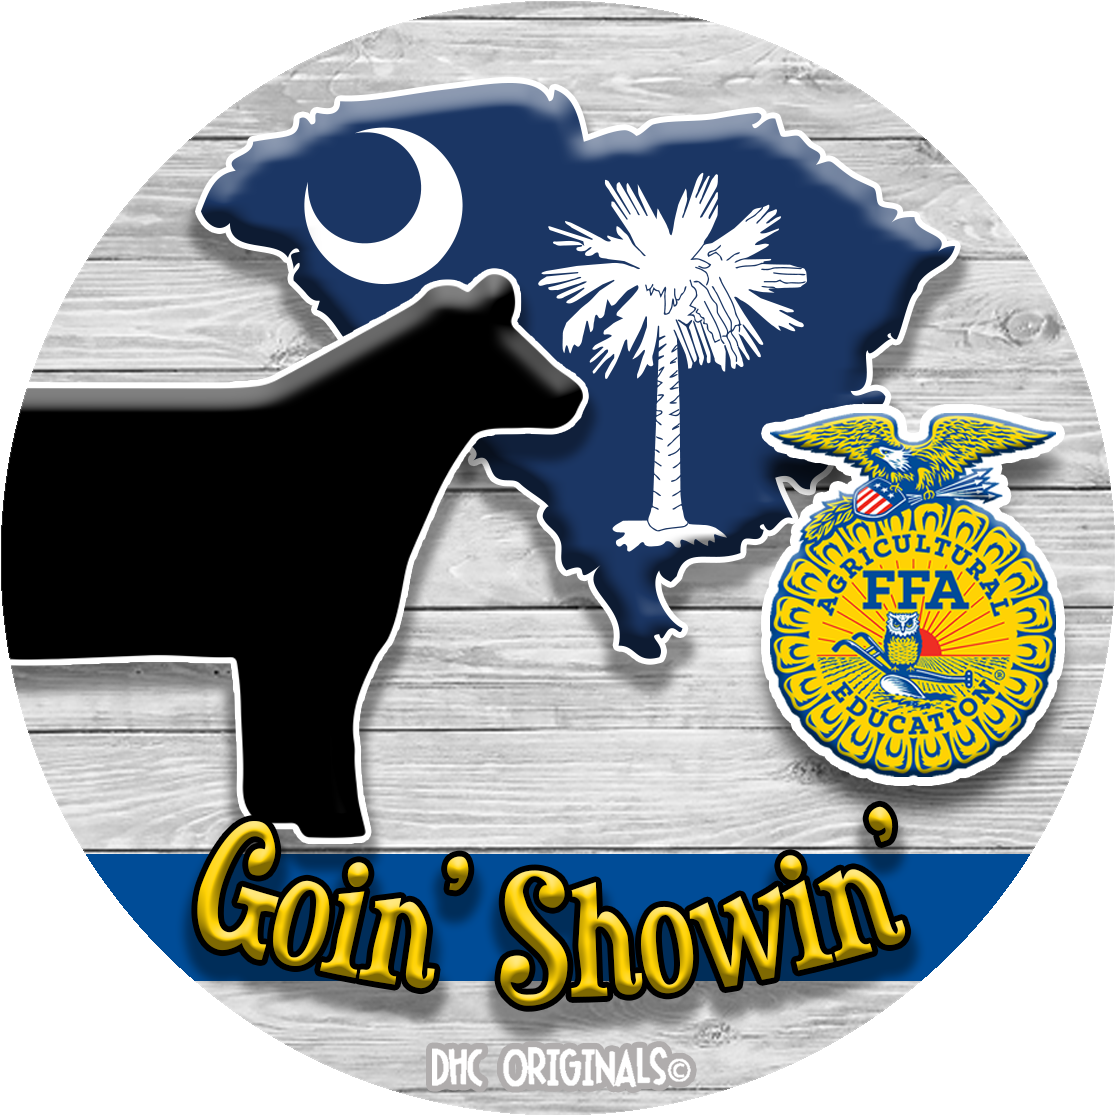 ffa emblem no background